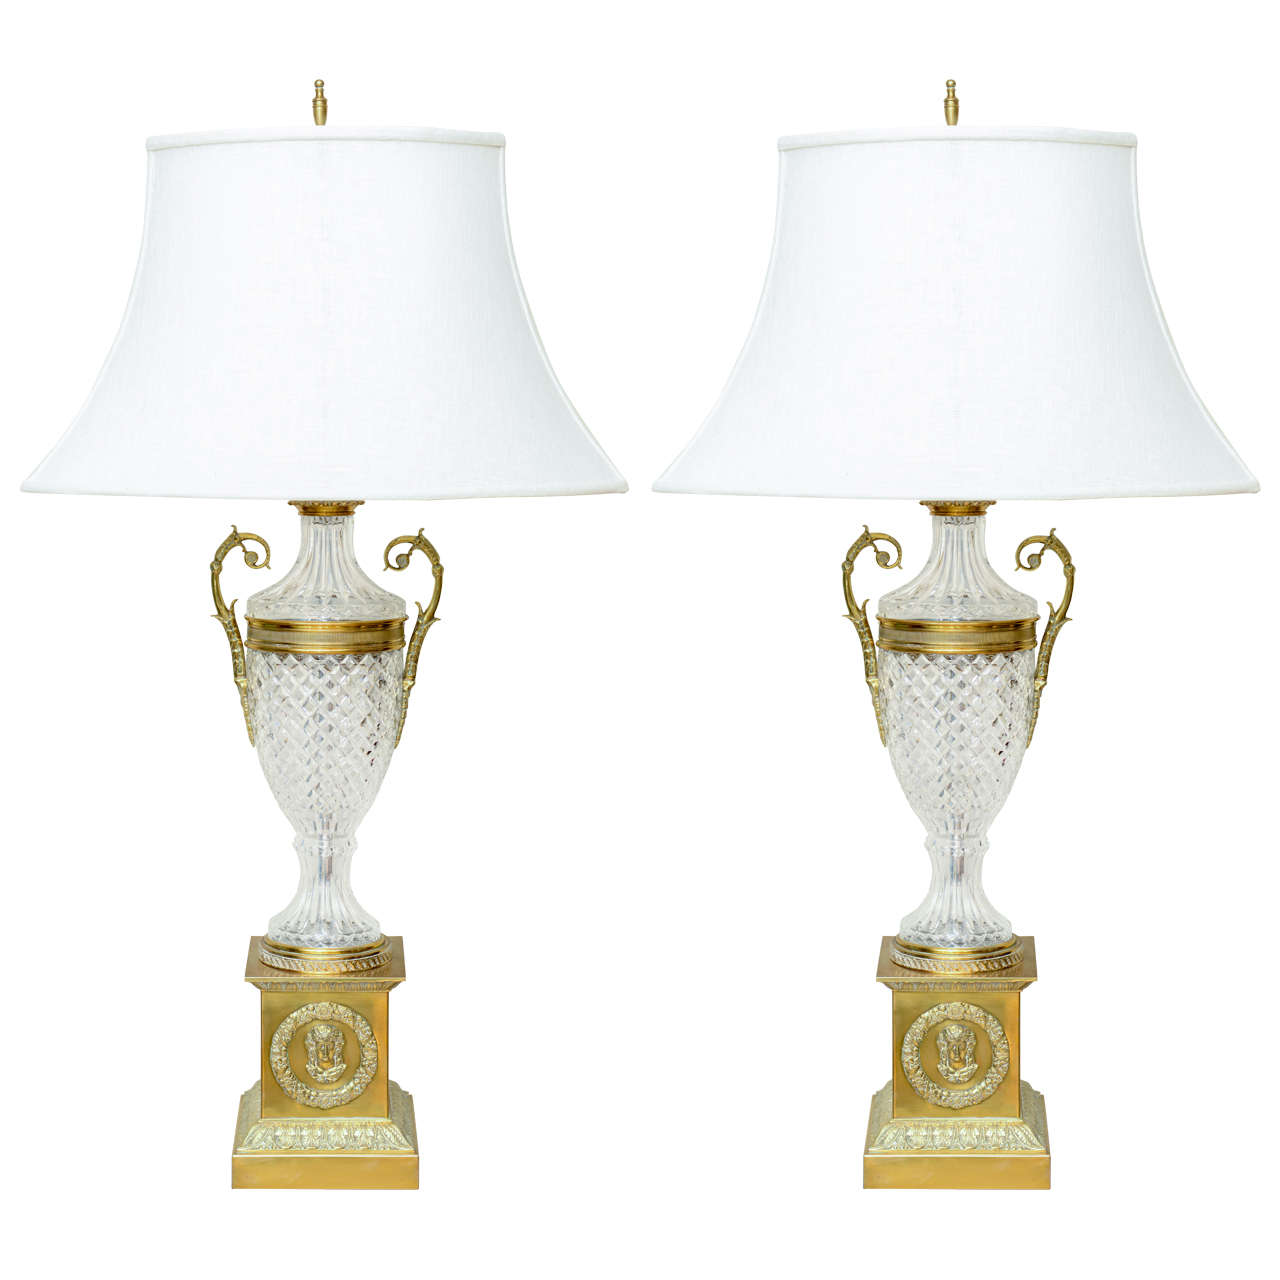 Paar großformatige Vintage-Lampen von Warren Kessler, Warren Kessler